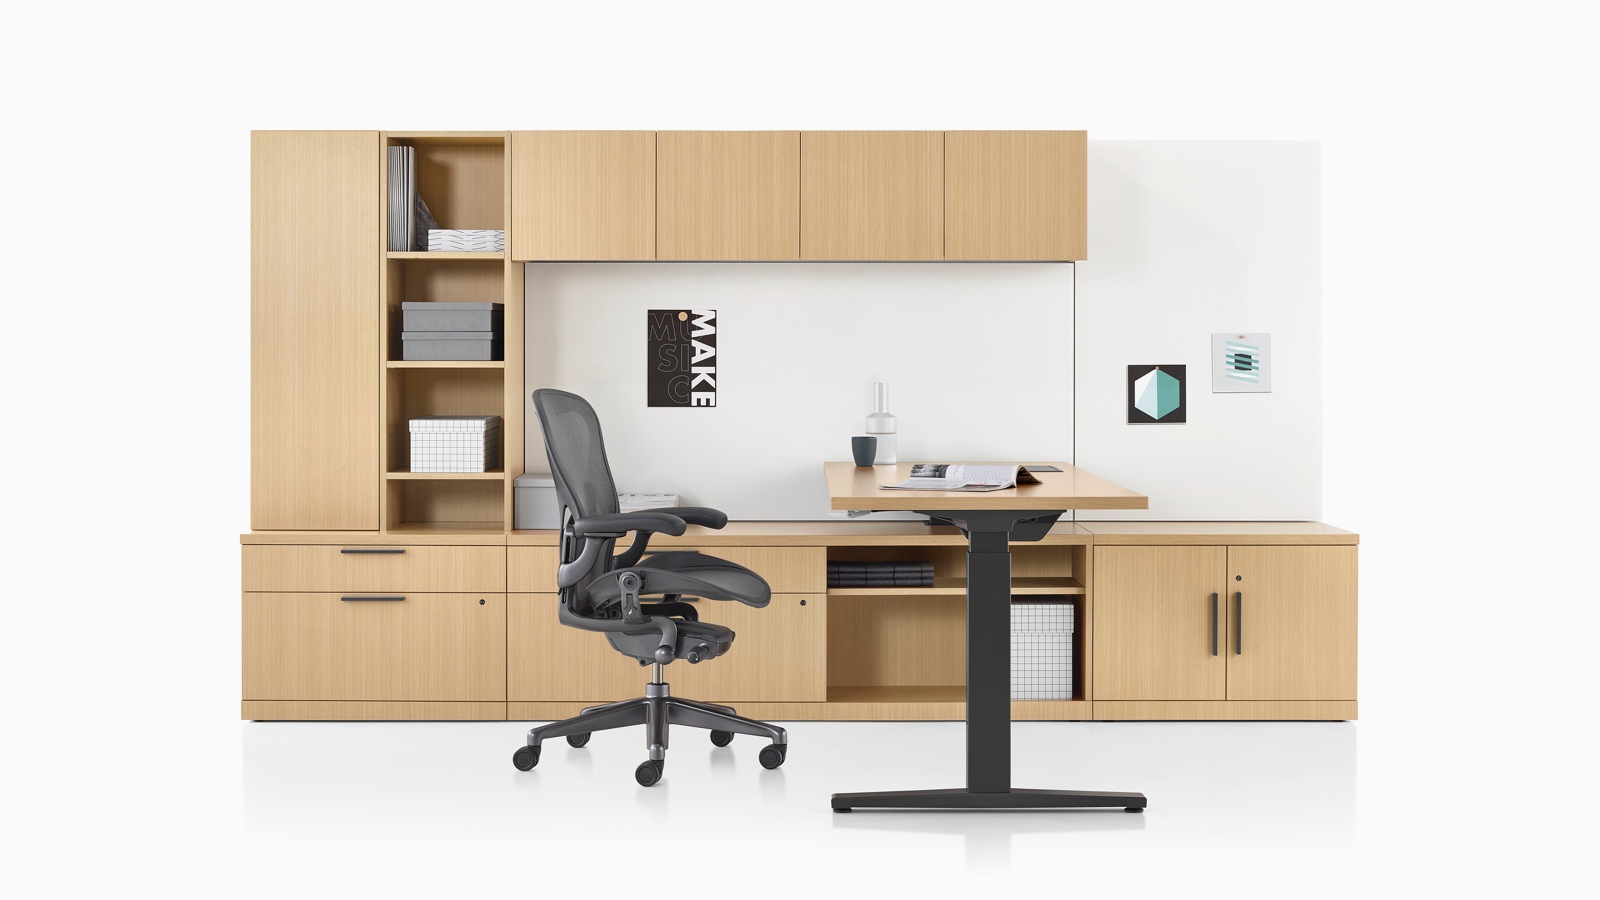 Canvas Private Office com armário em madeira clara, mesa com ajuste de altura e cadeira de escritório Aeron preta.